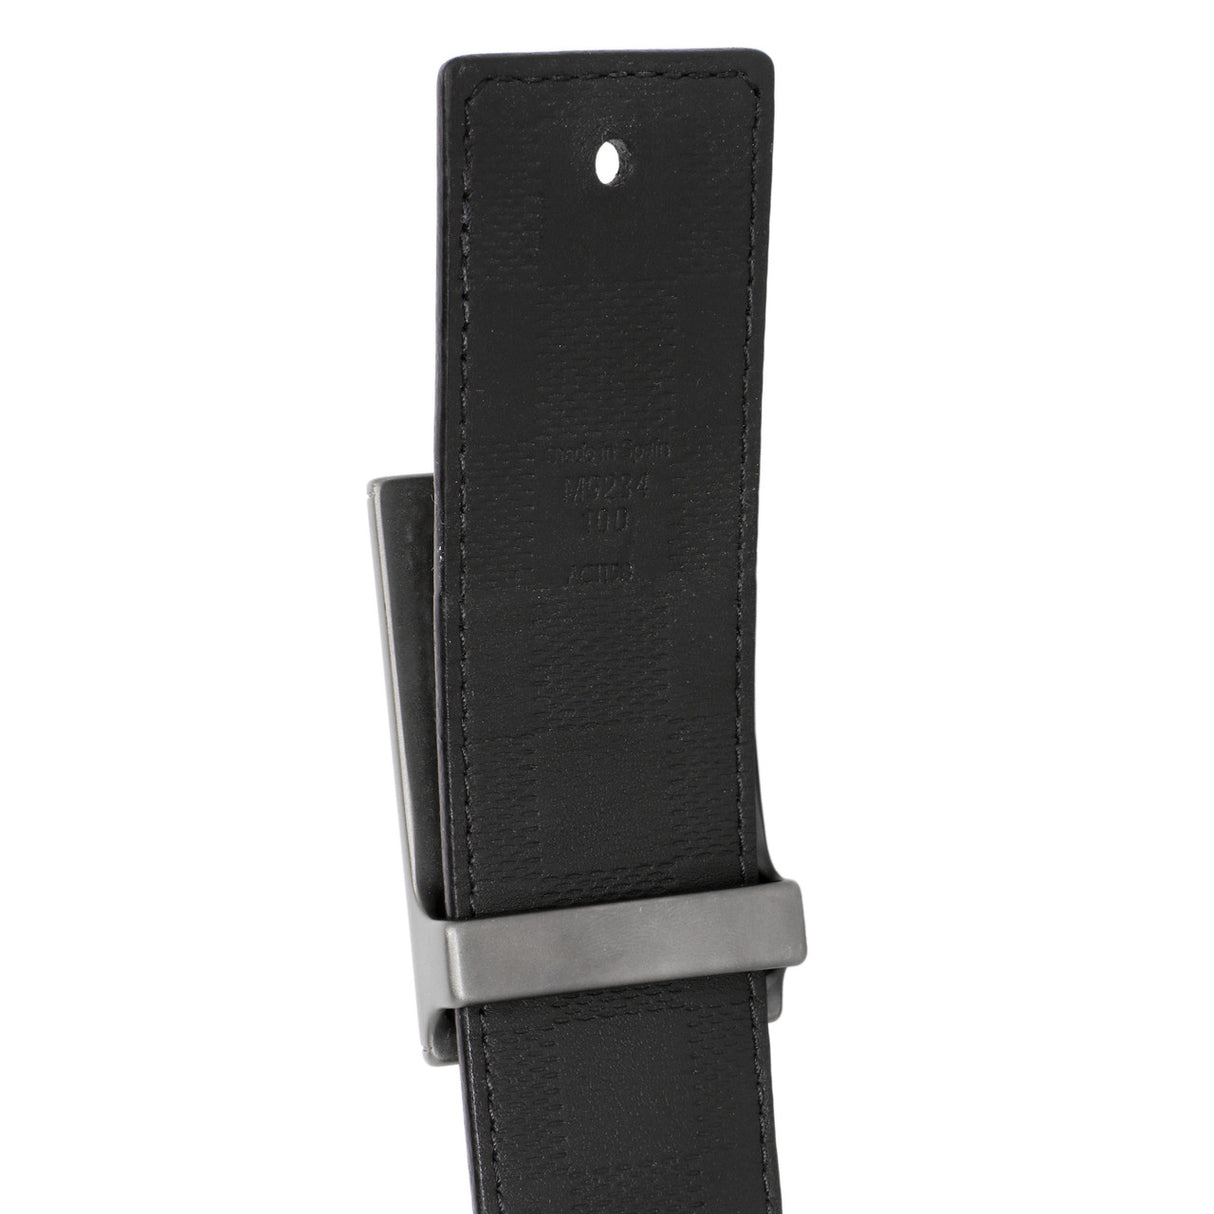 Louis Vuitton Damier Graphite Infini Neo Inventeur Reversible Belt 40mm